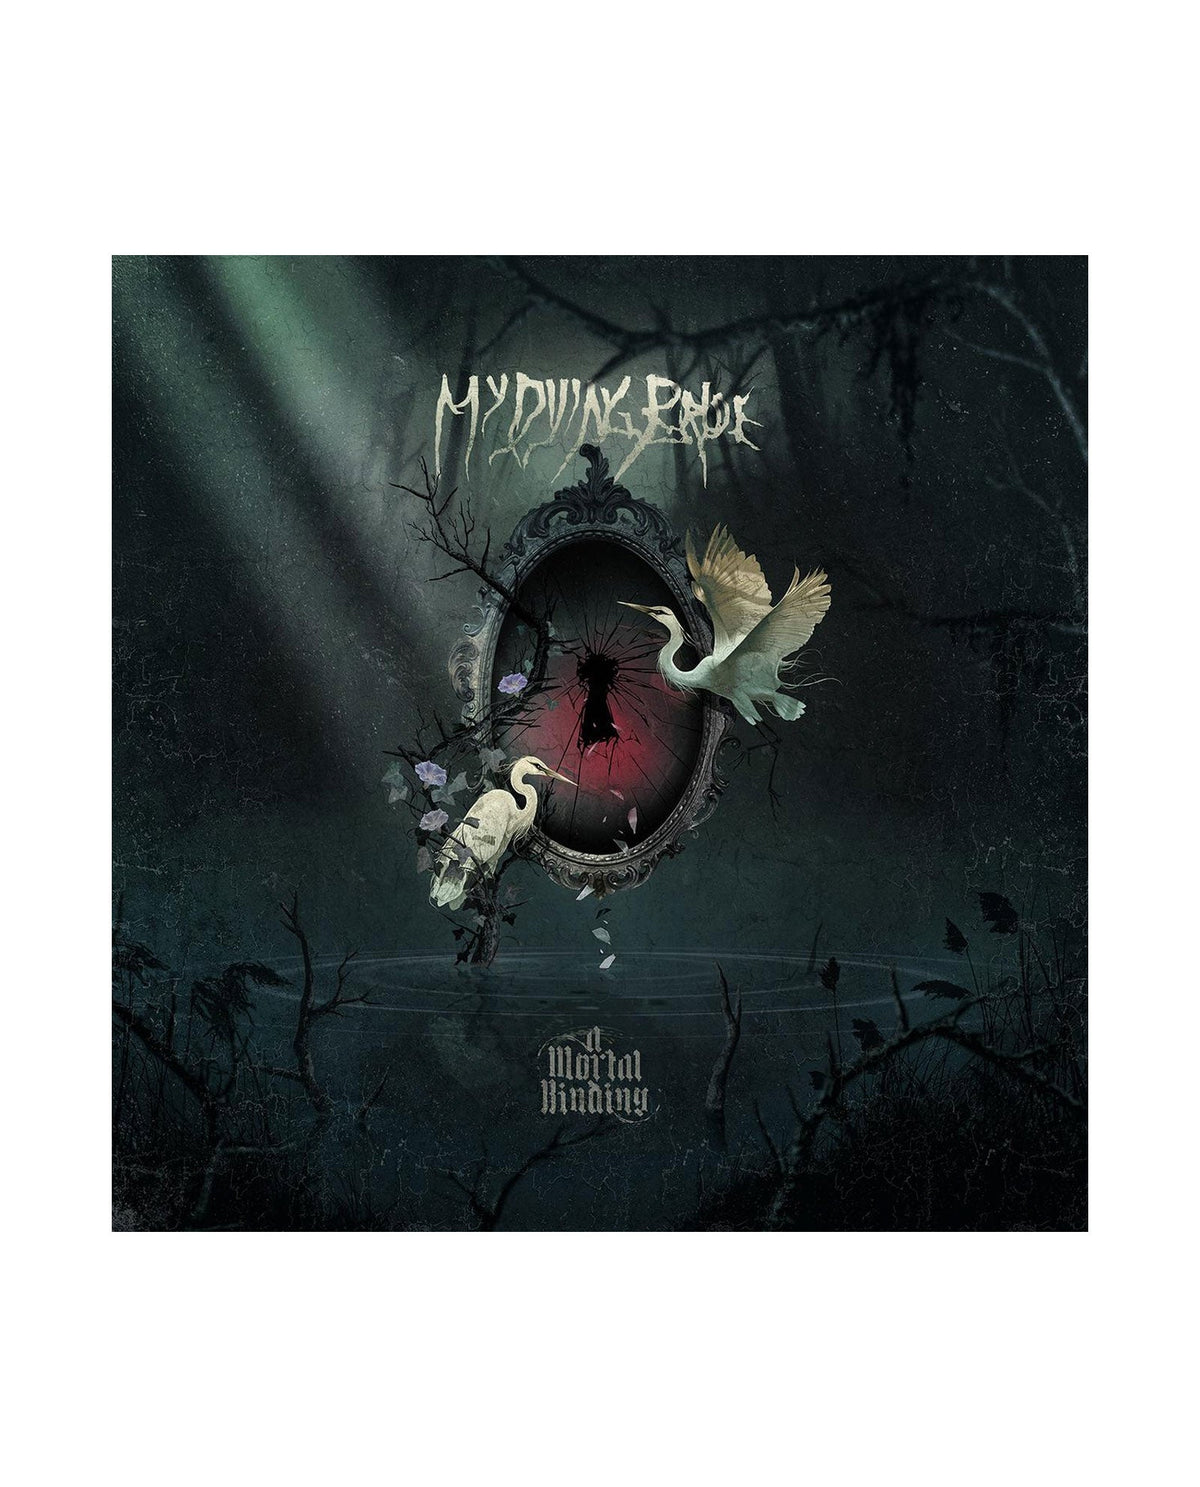 My Dying Bride - 2LP Vinilo Verde "A Mortal Binding" - D2fy · Rocktud - Rocktud